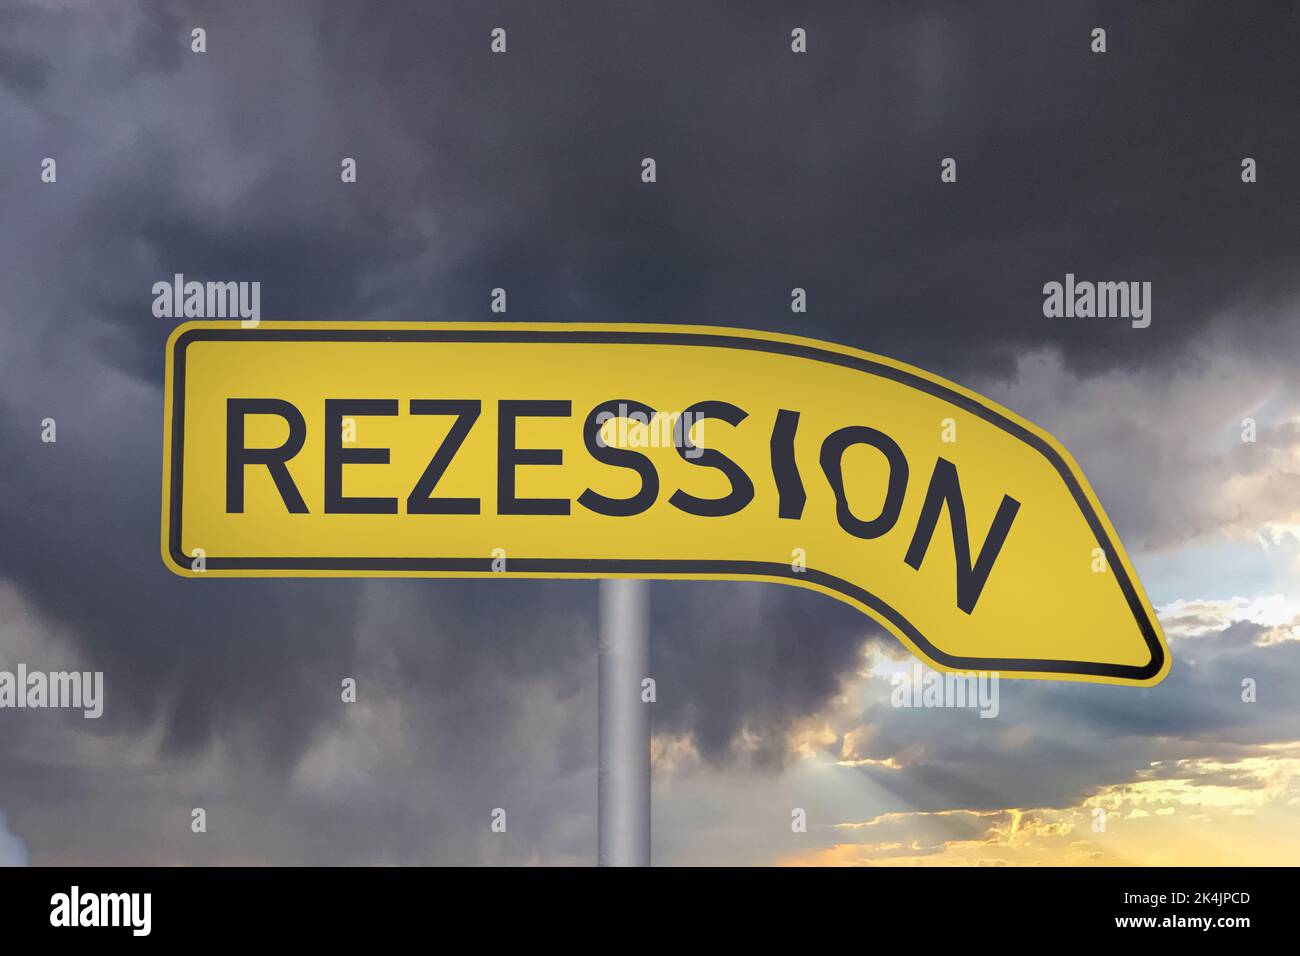 Imagen de símbolo Recesión: Contra un cielo sombrío es una flecha direccional con la palabra recesión escrita en ella Foto de stock